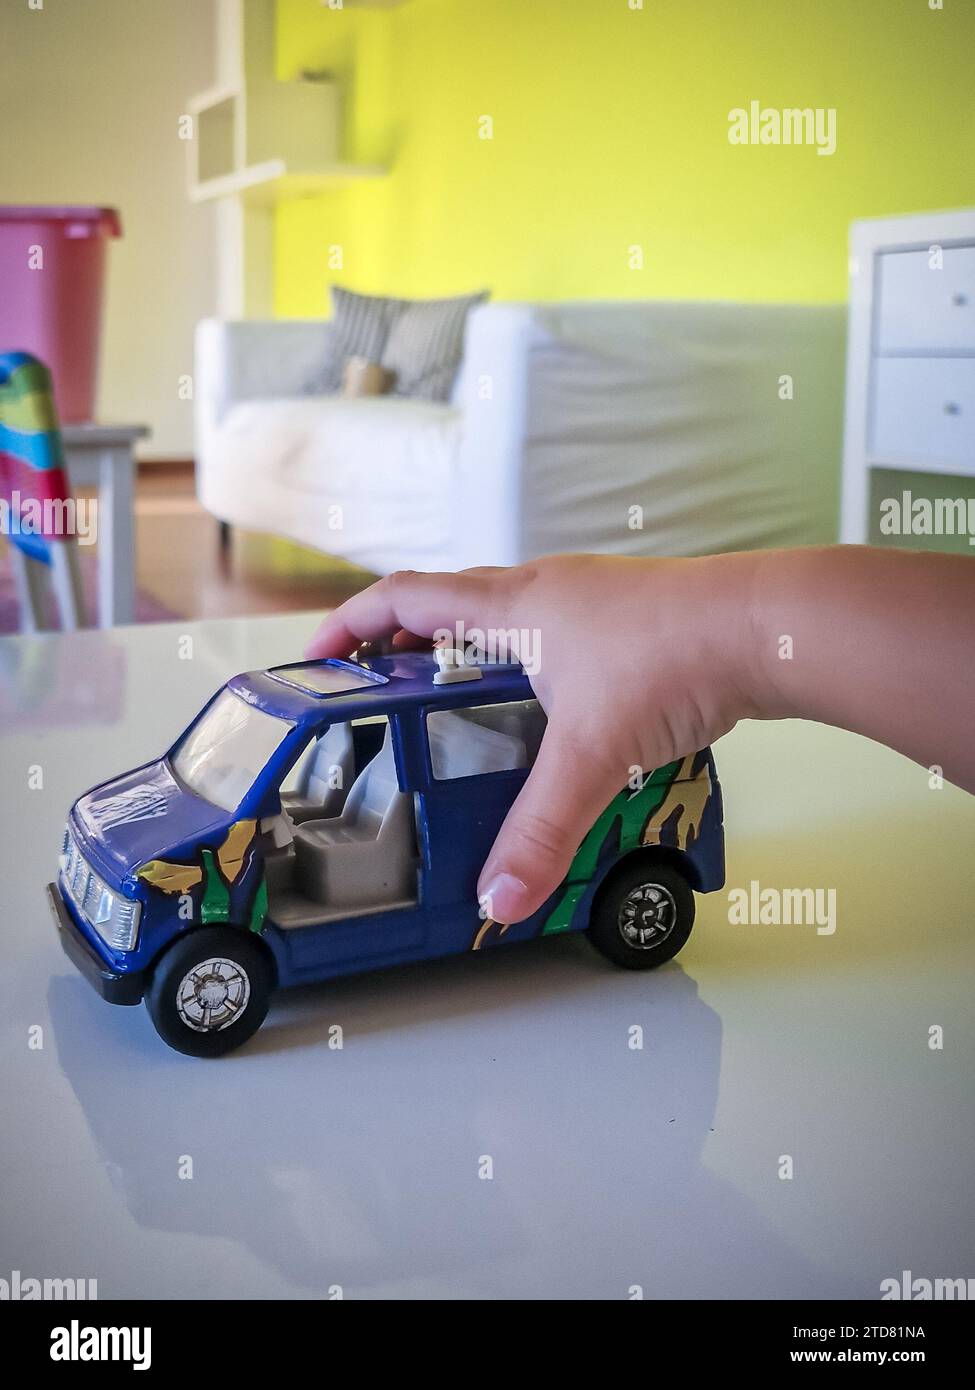 Gros plan de la petite main d'un enfant saisissant une voiture jouet bleue vibrante sur une salle de jeux colorée, encapsulant la joie et l'innocence du jeu de l'enfance Banque D'Images